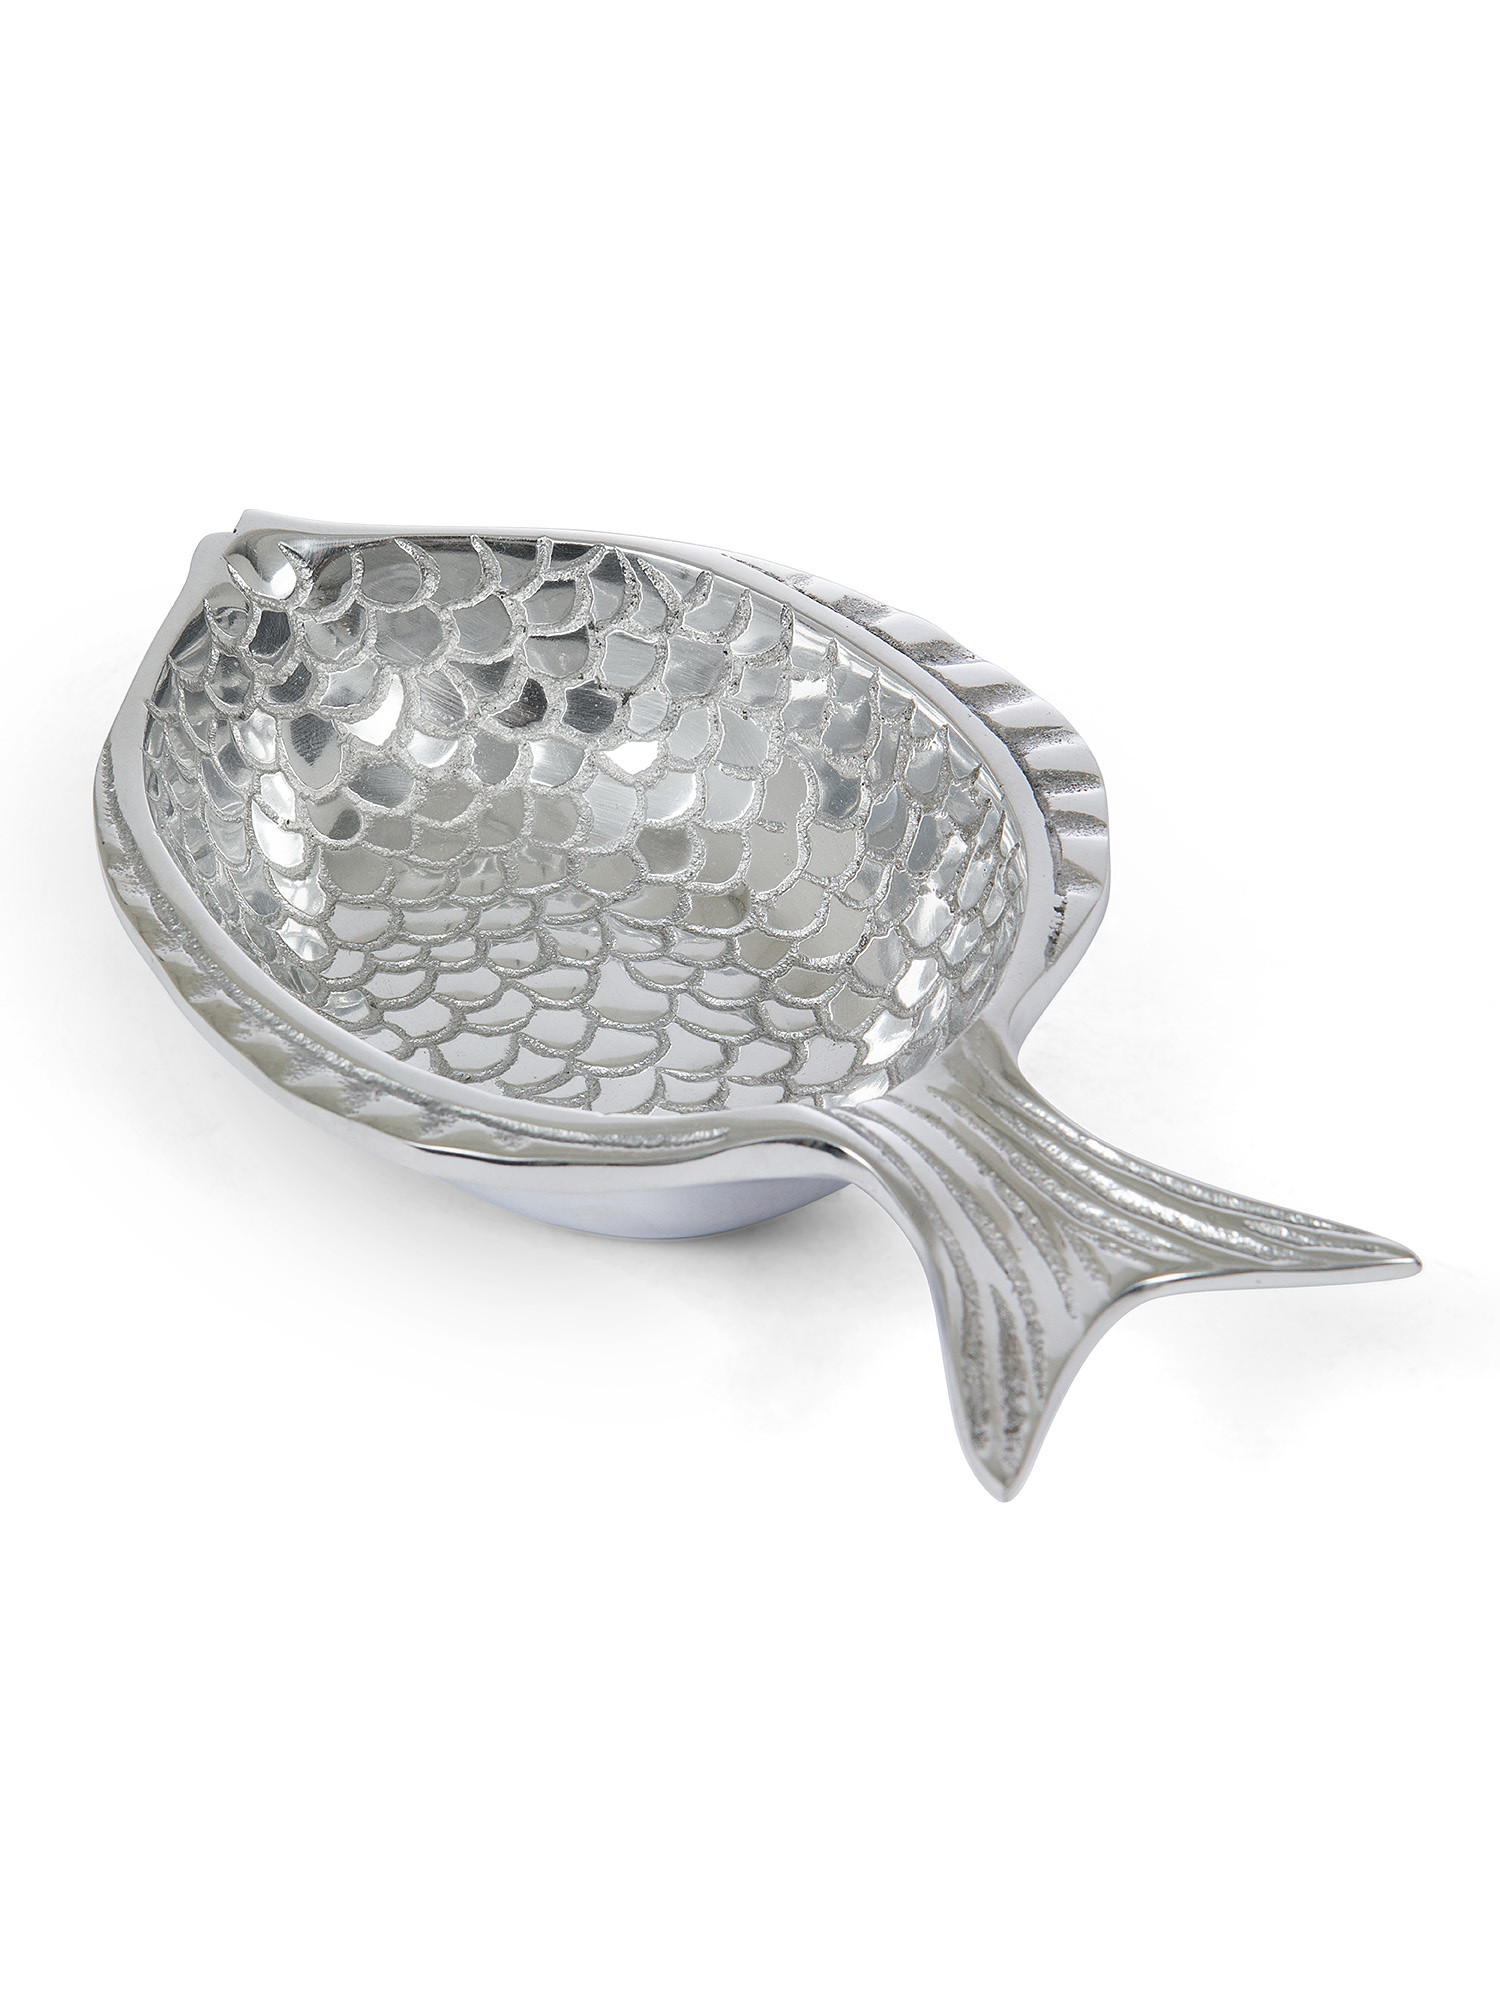 Coppetta pesce alluminio, Grigio argento, large image number 1